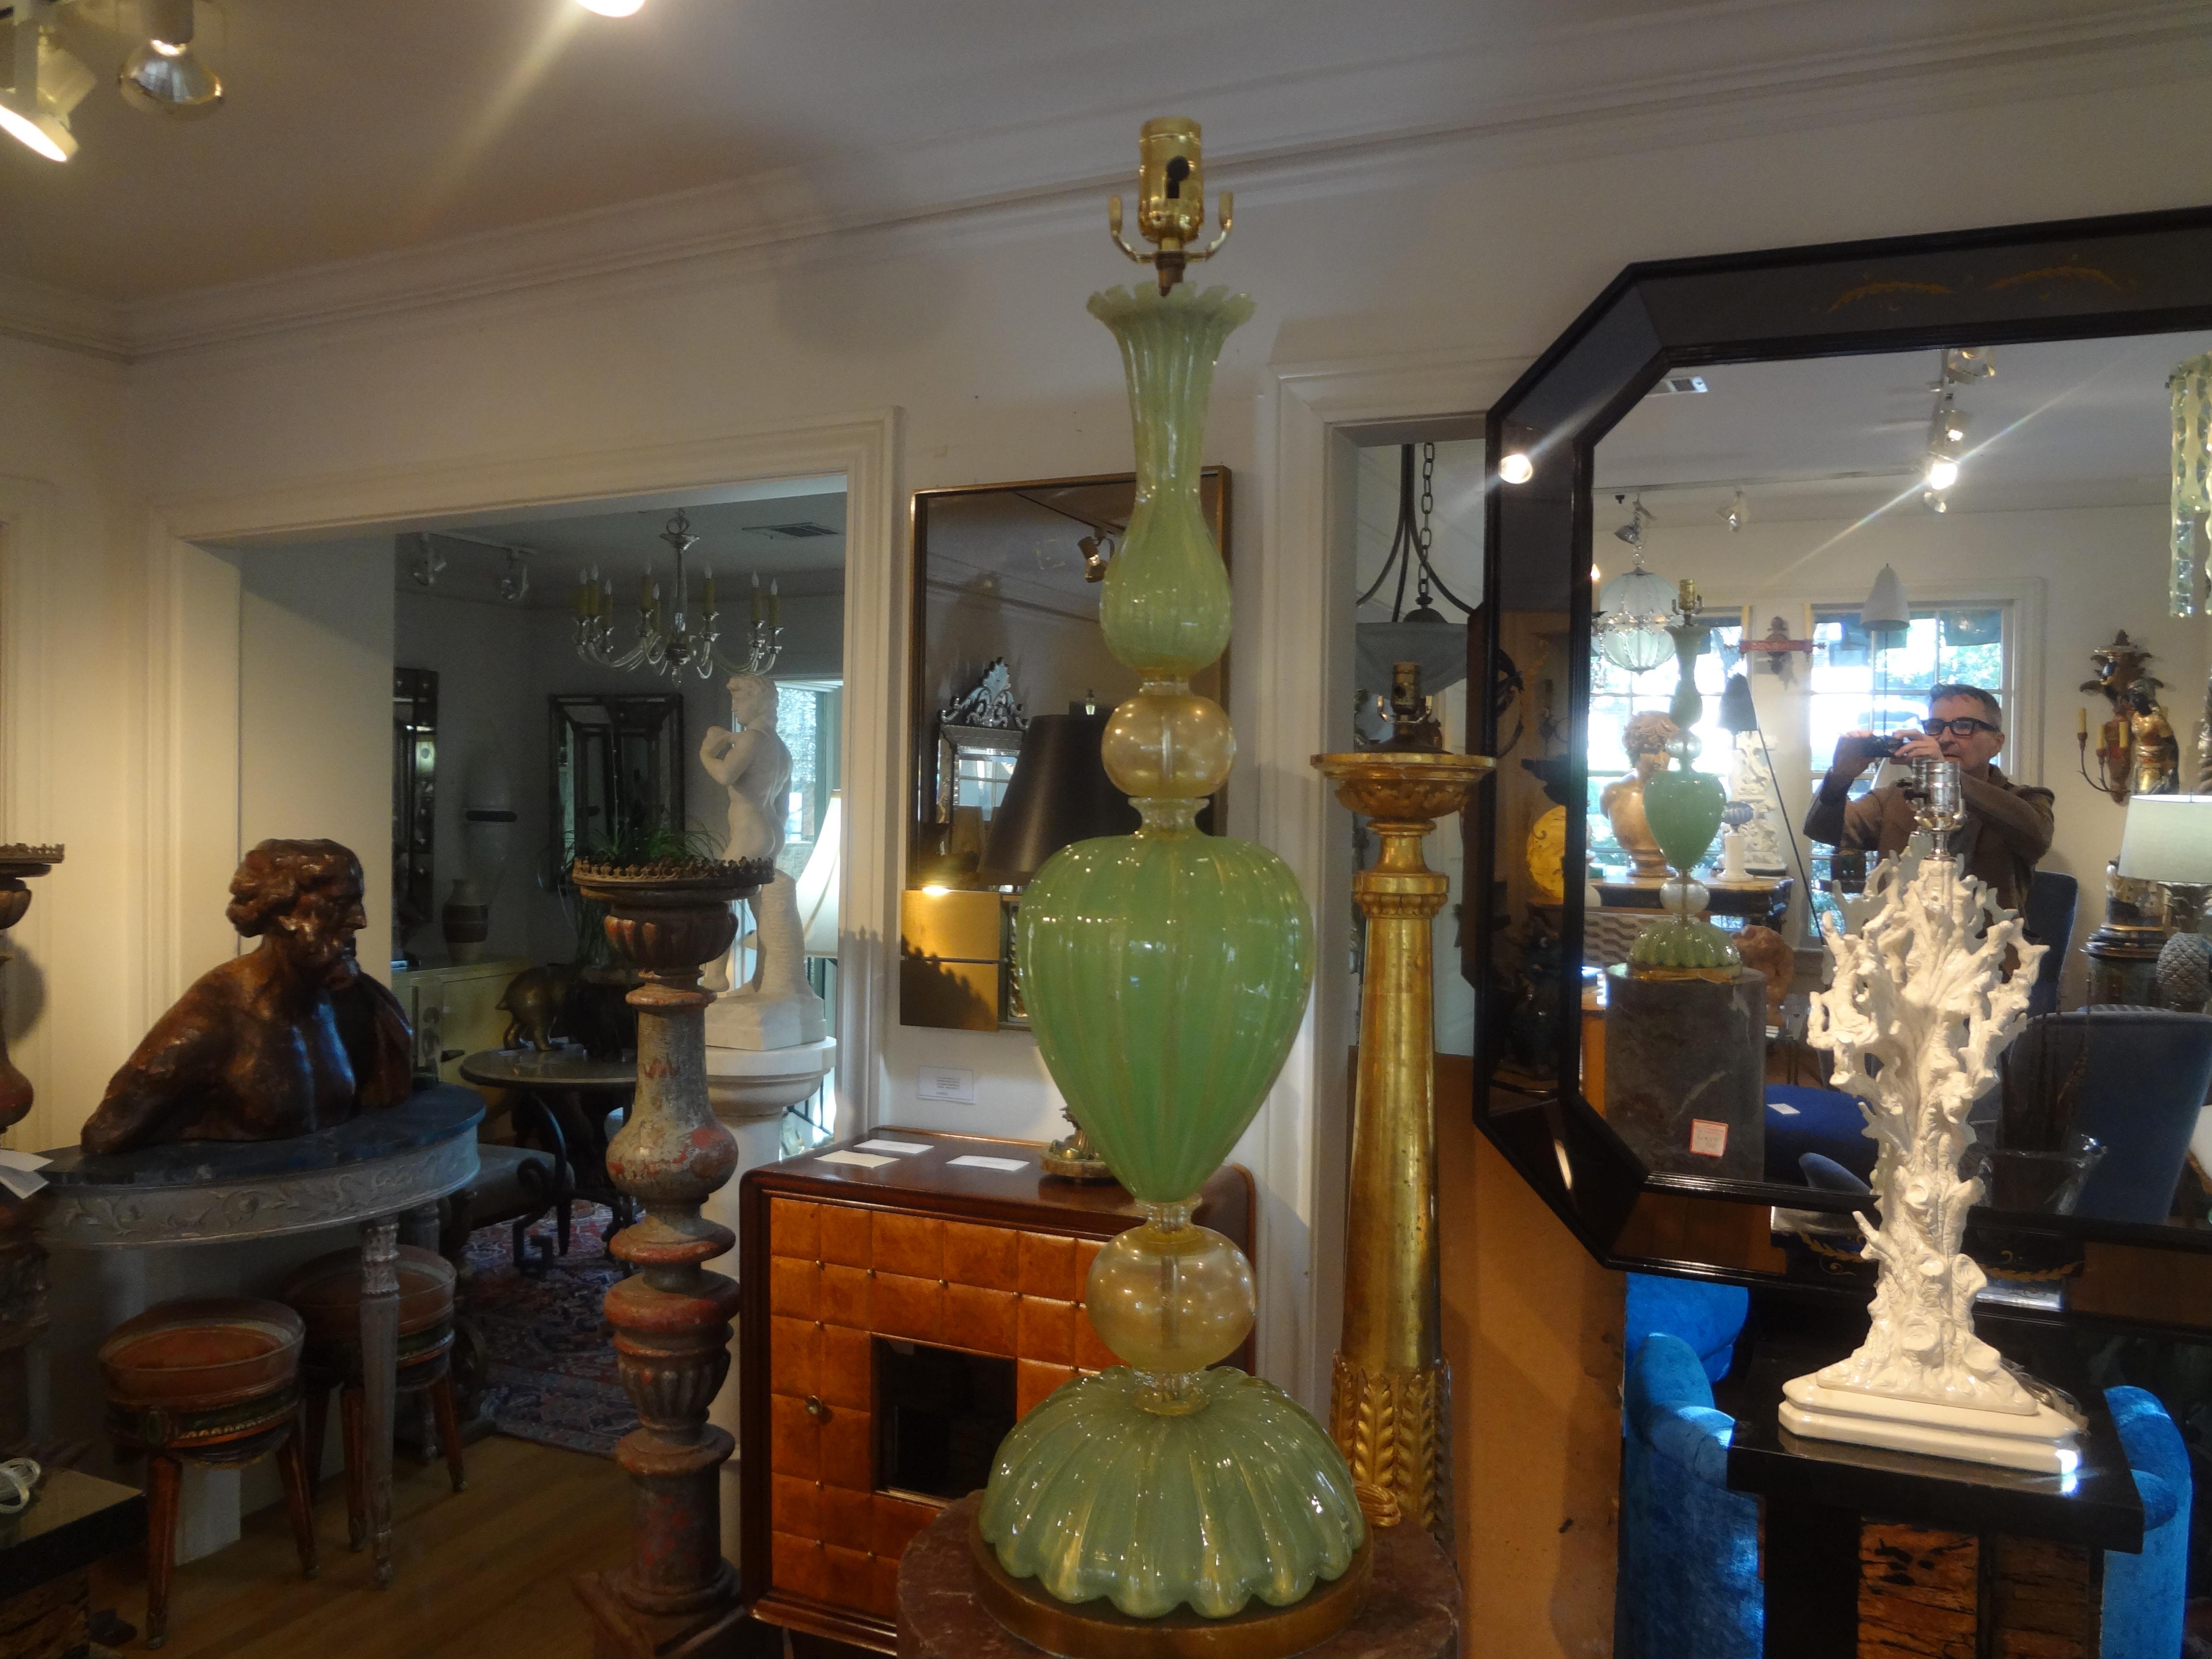 Grande lampe en verre de Murano par Seguso.
Cette étonnante lampe postmoderne de Murano est composée du plus beau verre vert et or sur une base en bois doré. Notre charmante lampe Murano de style Hollywood Regency a été rééquipée d'une nouvelle